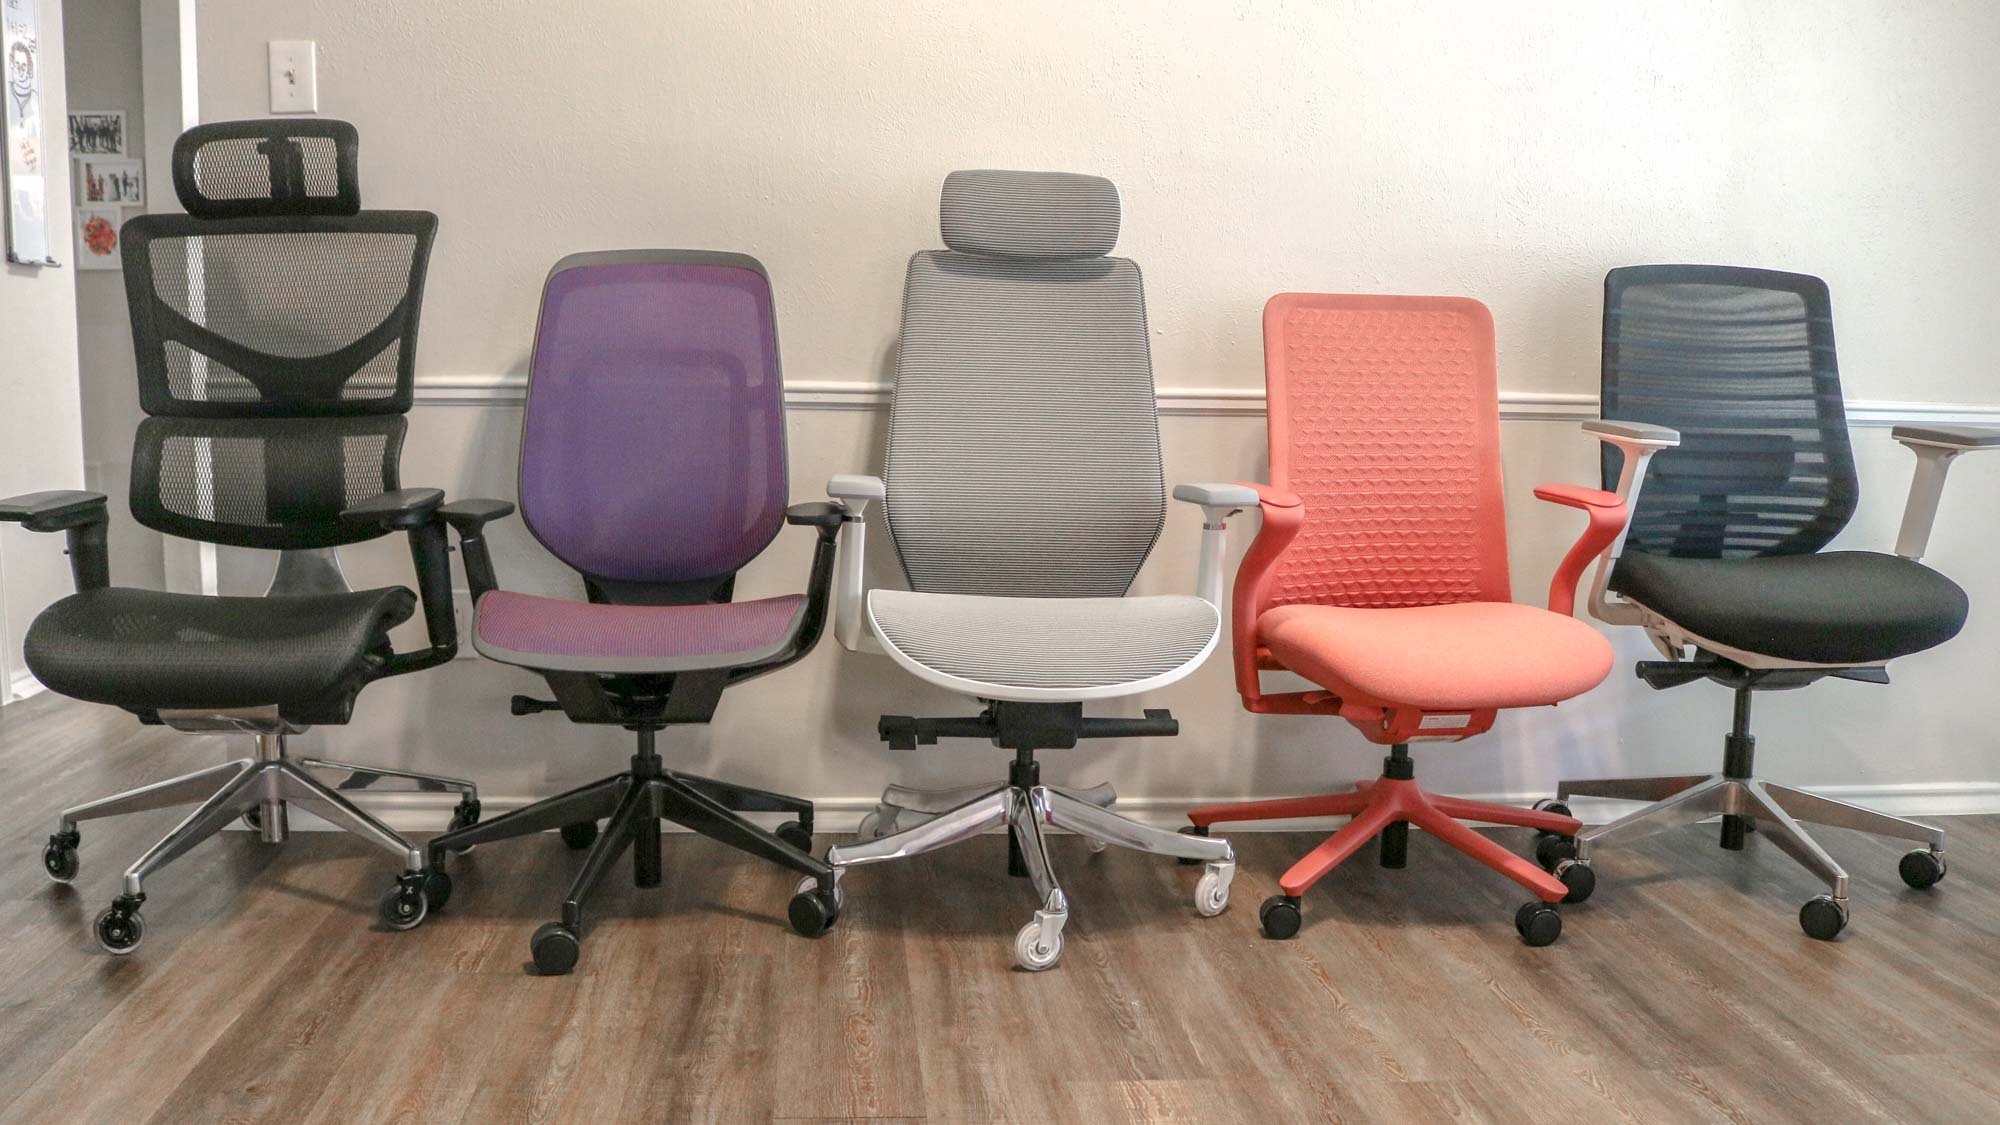 Пять разных офисных стульев выстроились в ряд